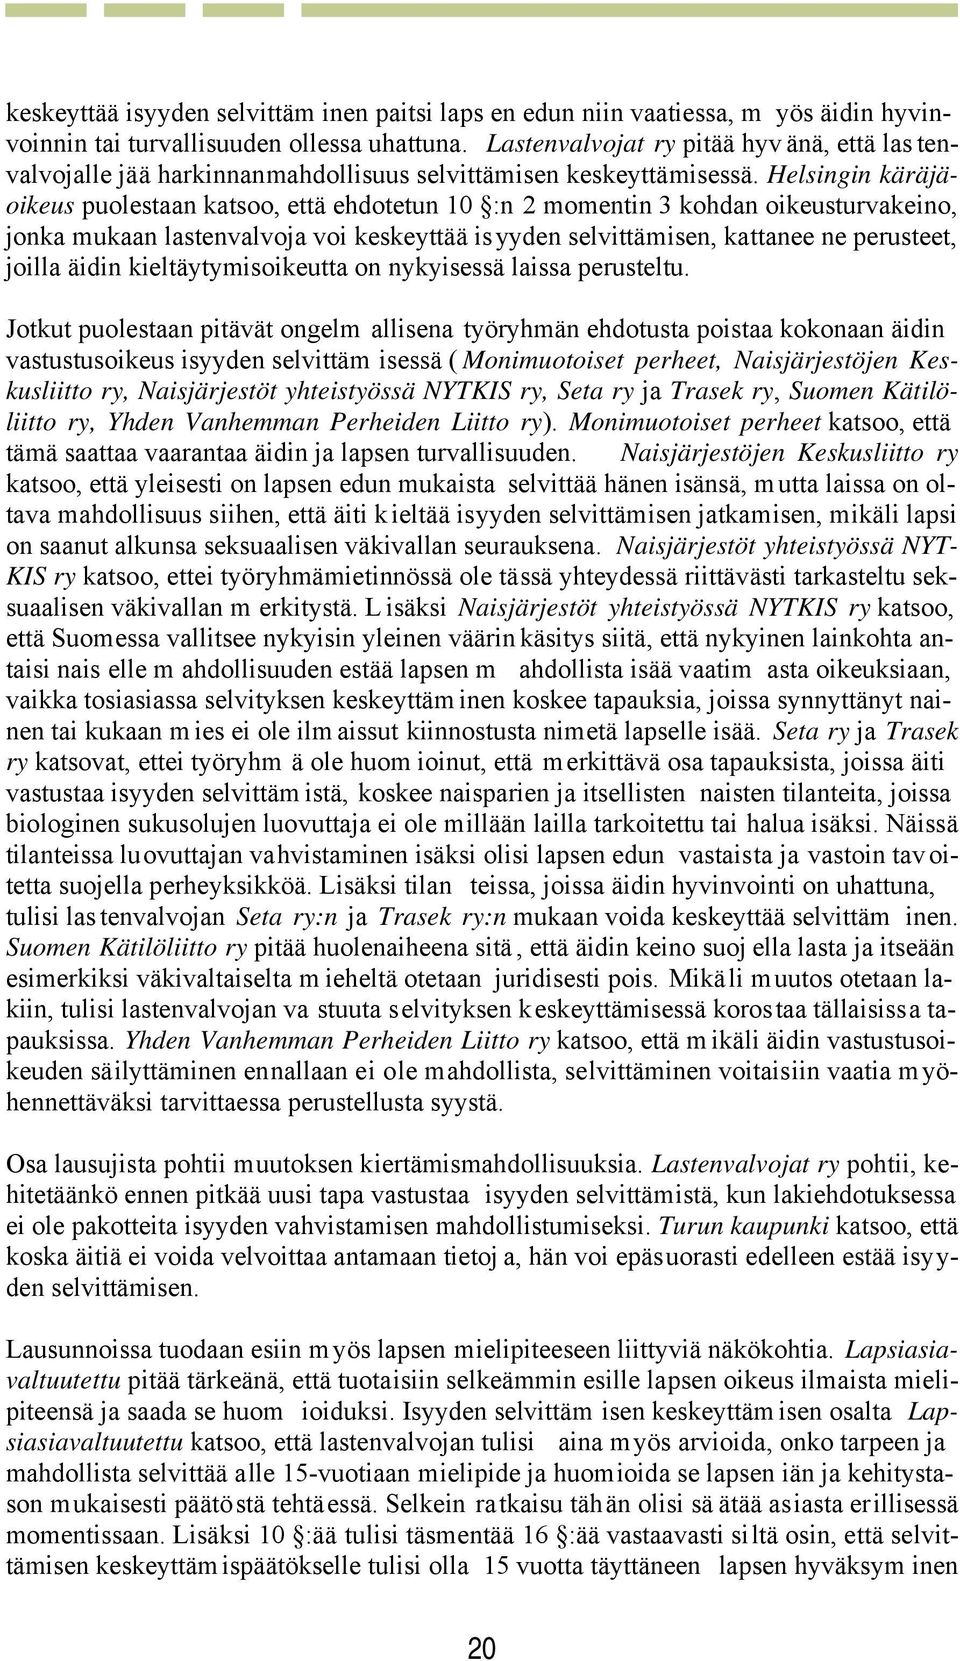 Helsingin käräjäoikeus puolestaan katsoo, että ehdotetun 10 :n 2 momentin 3 kohdan oikeusturvakeino, jonka mukaan lastenvalvoja voi keskeyttää isyyden selvittämisen, kattanee ne perusteet, joilla